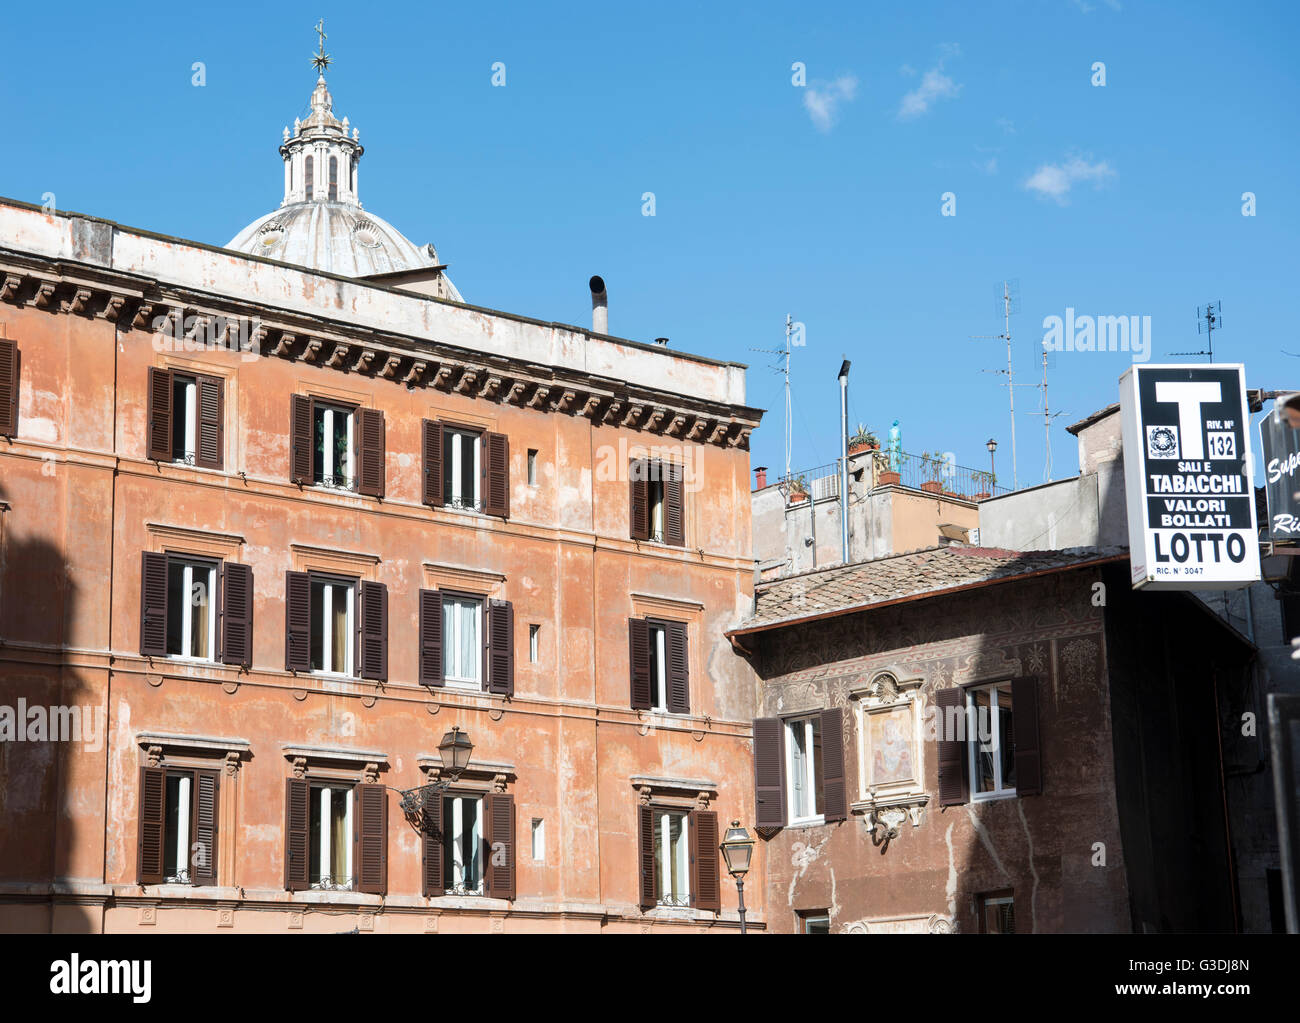 Italien, Rom, Gebäude am Piazza del Biscione, am Campo de Fiori Foto Stock